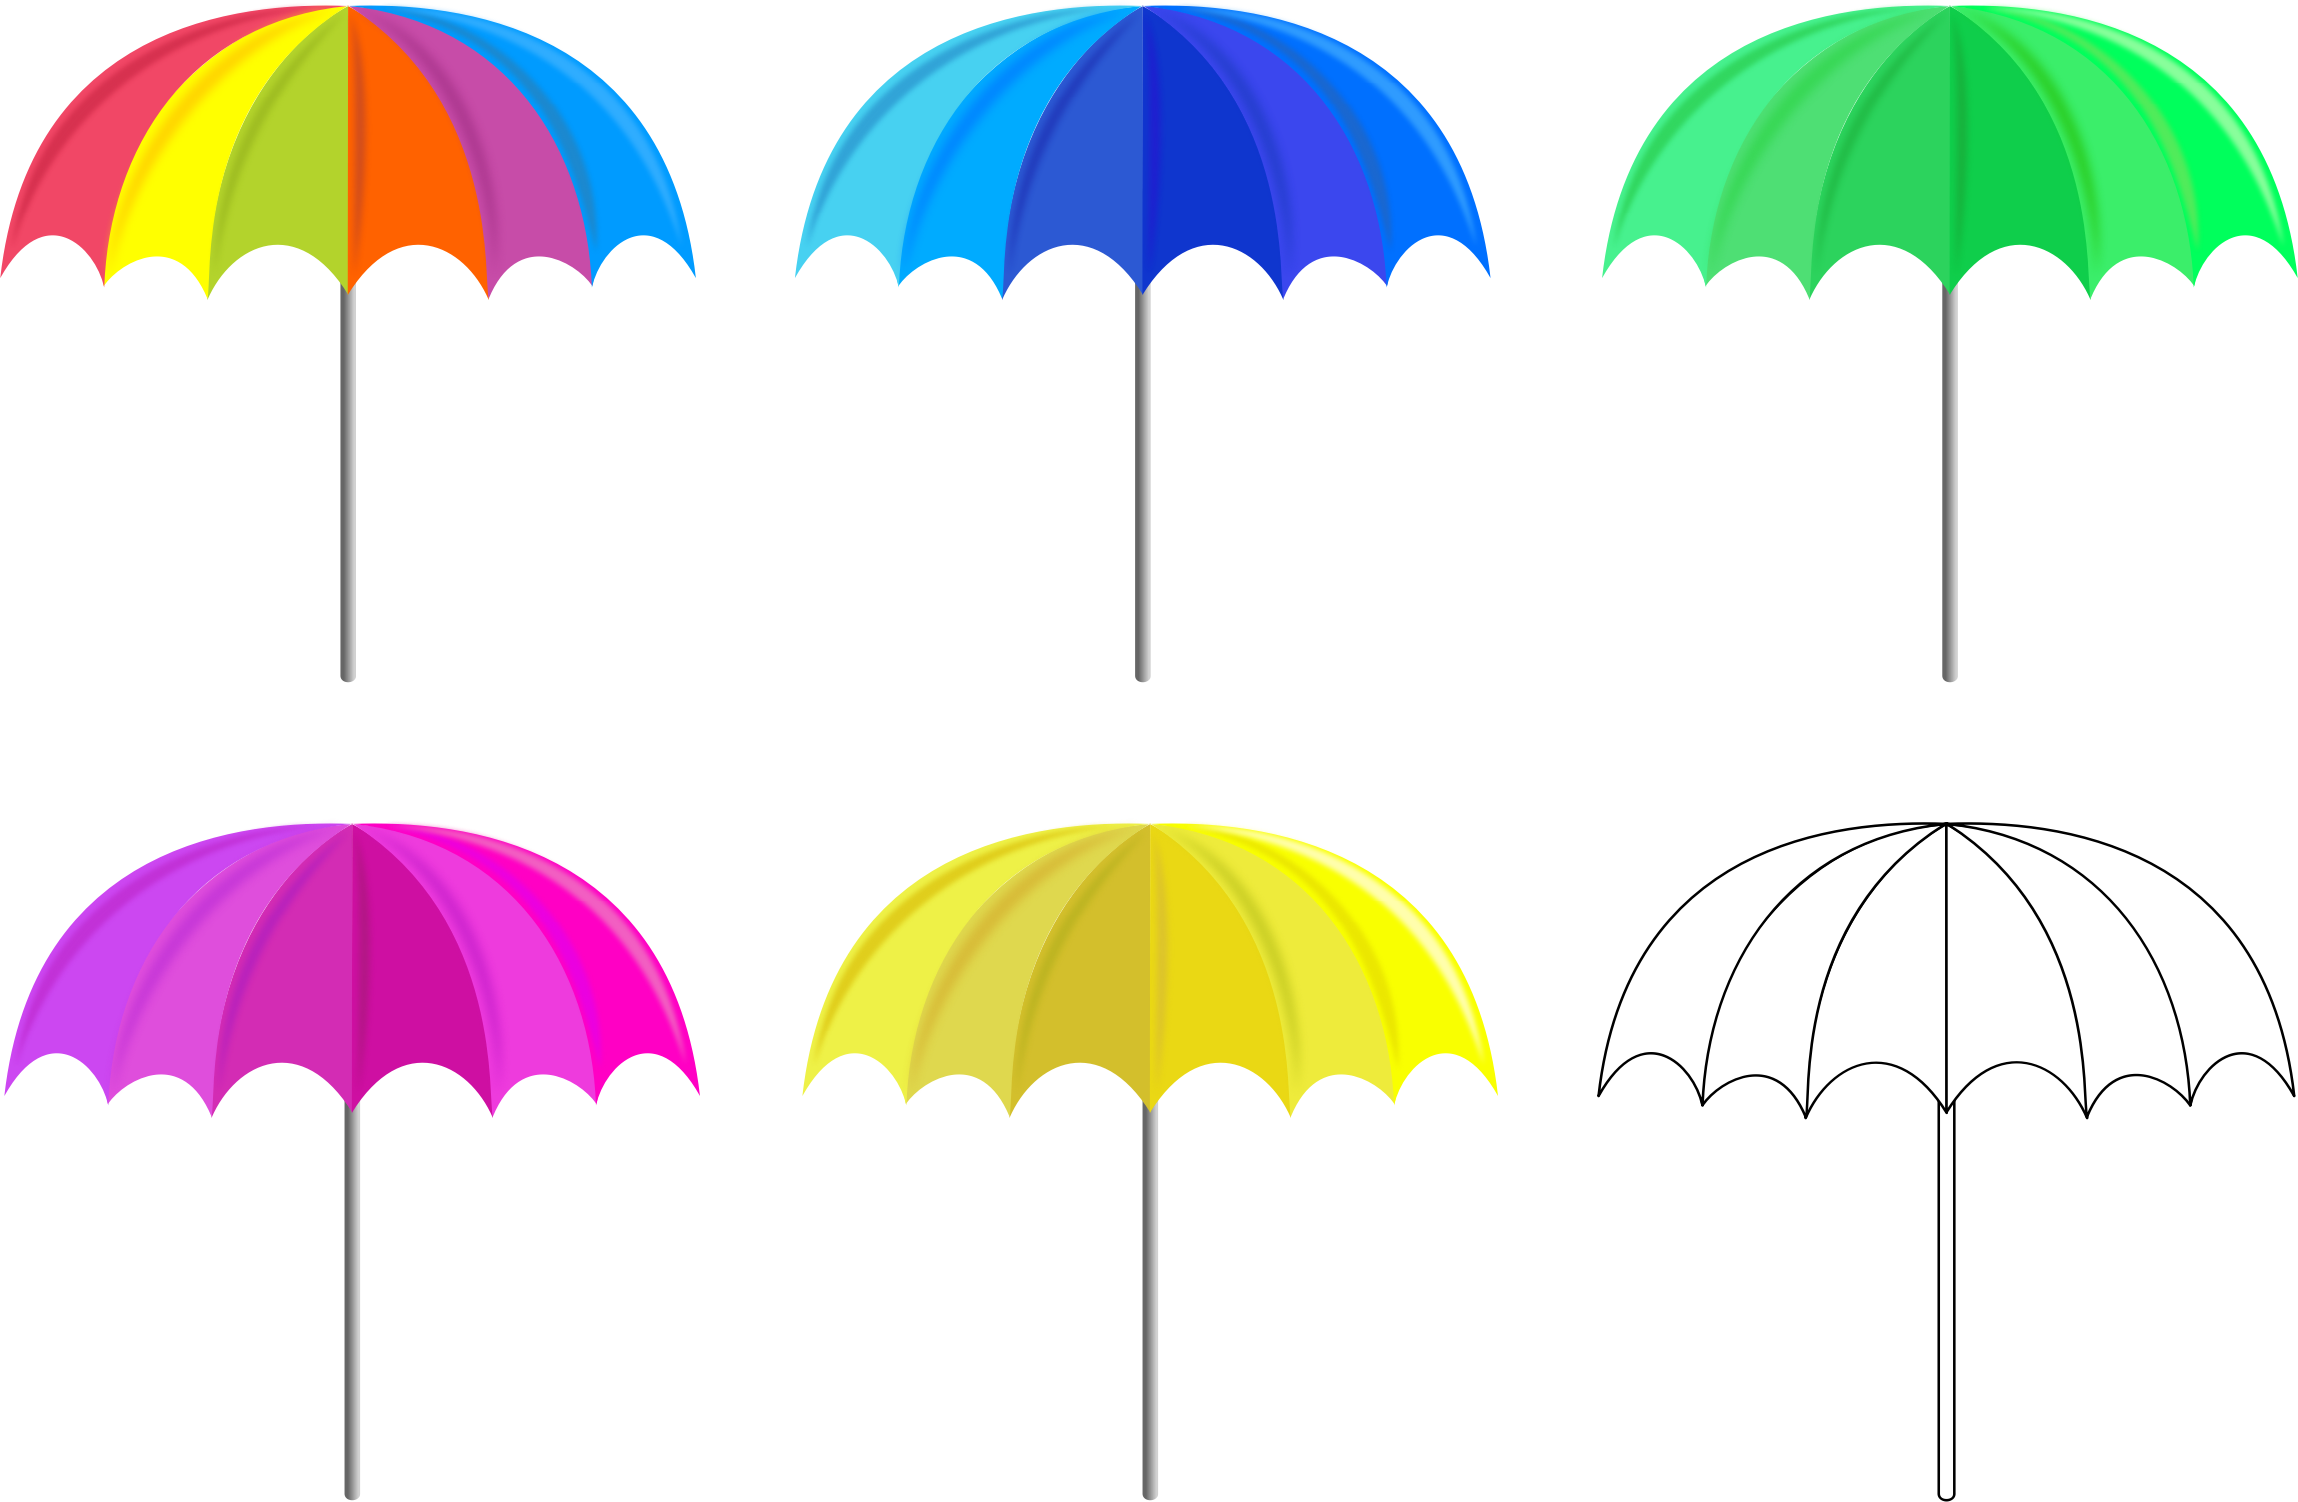 clipart umbrella colorful umbrella